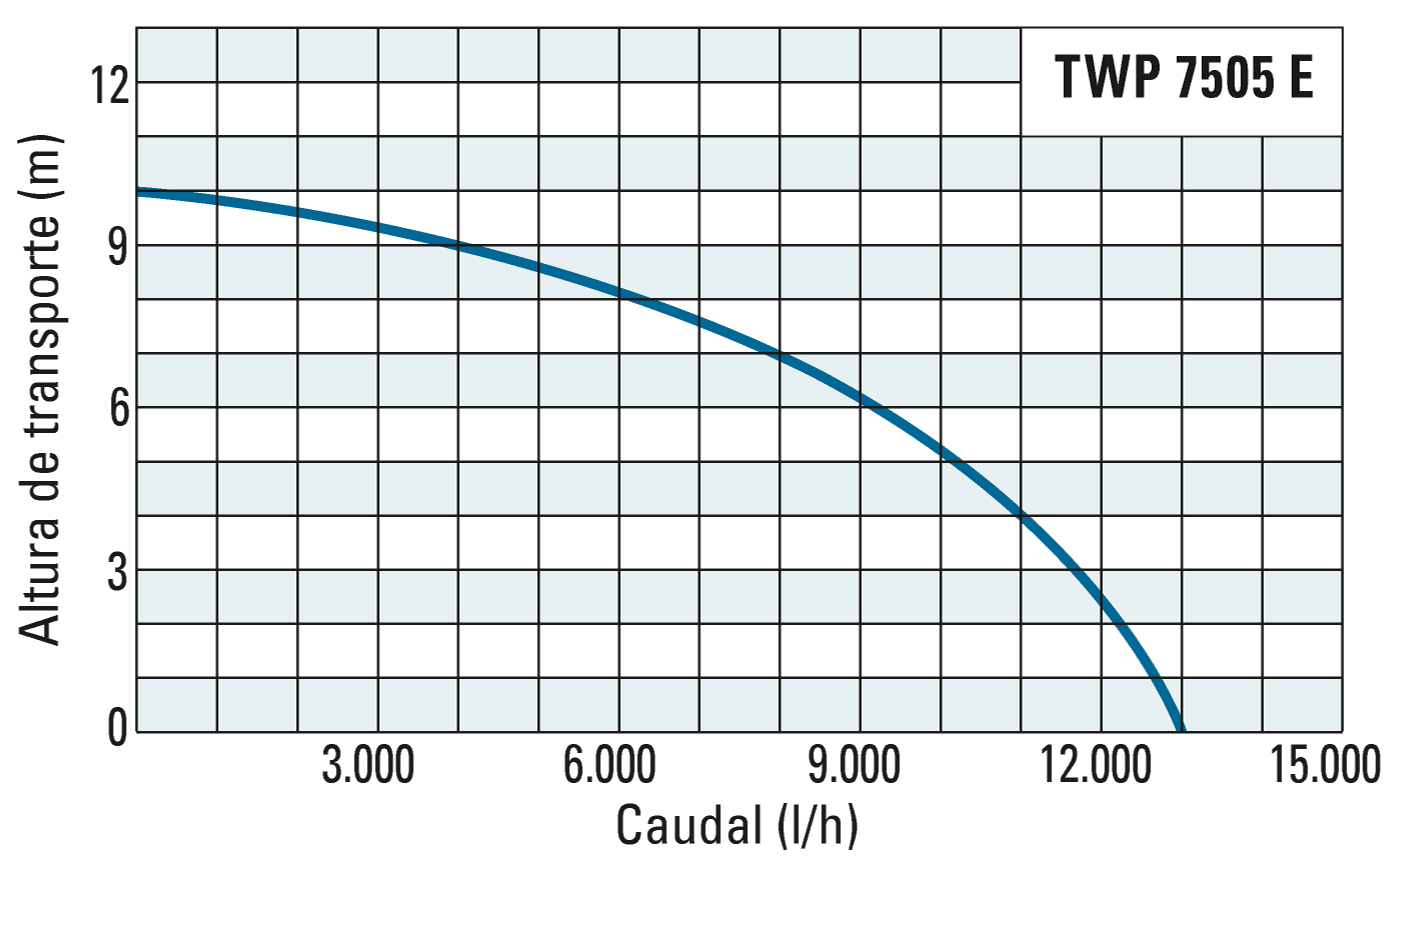 Altura de transporte e débito da TWP 7505 E